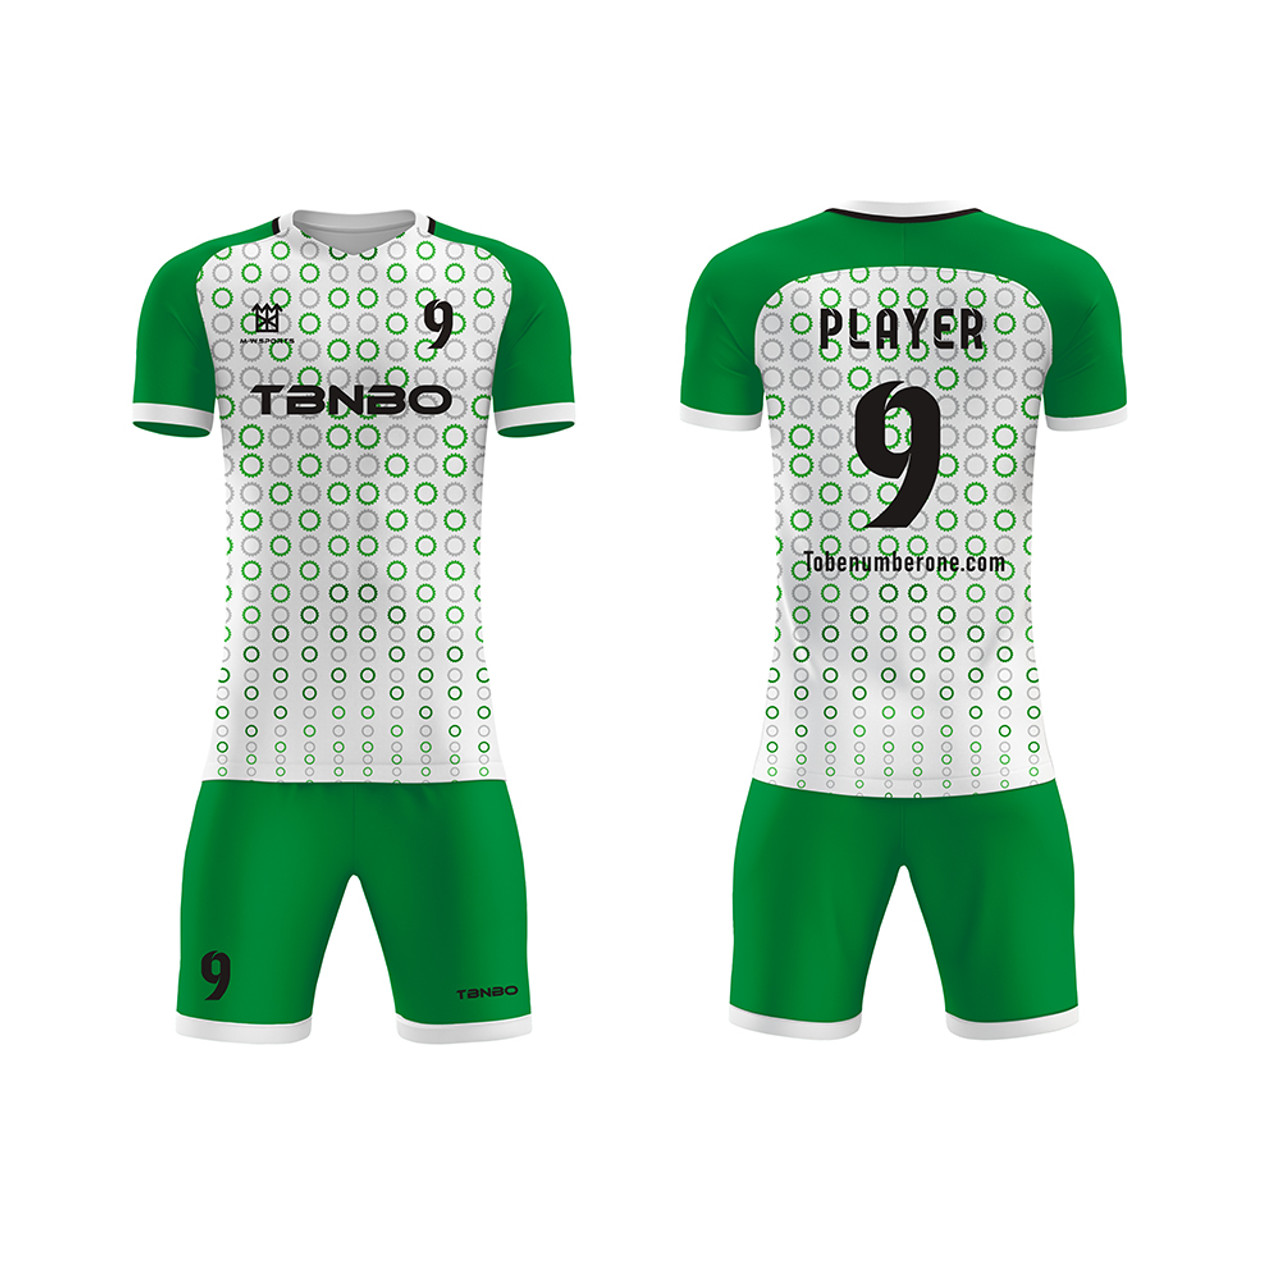 green football jersey design